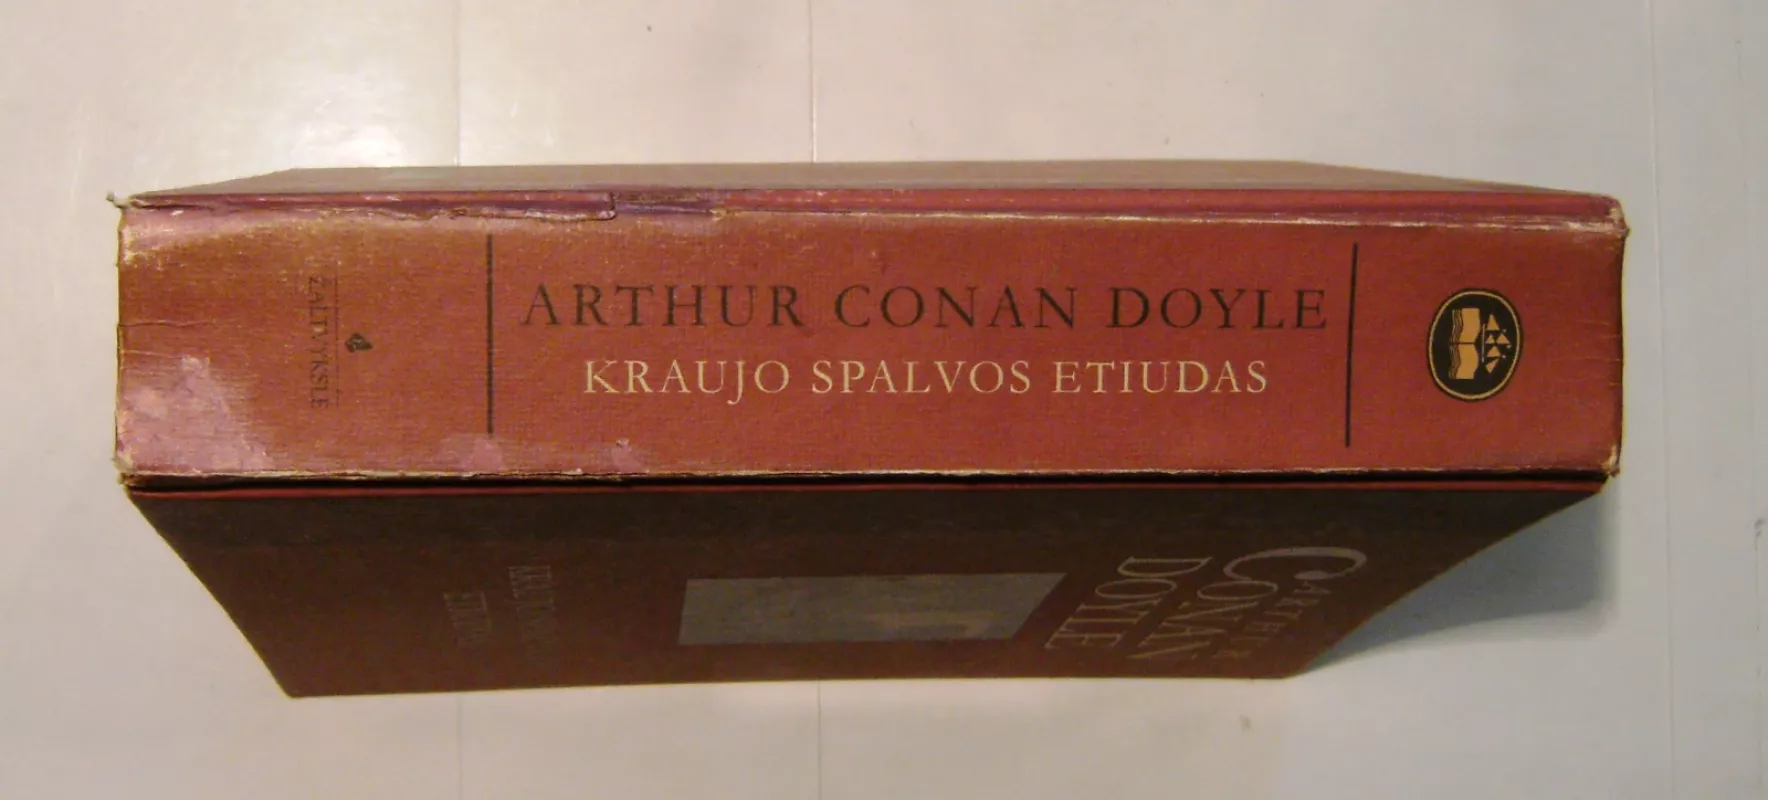 Kraujo spalvos etiudas - Arthur Conan Doyle, knyga 6